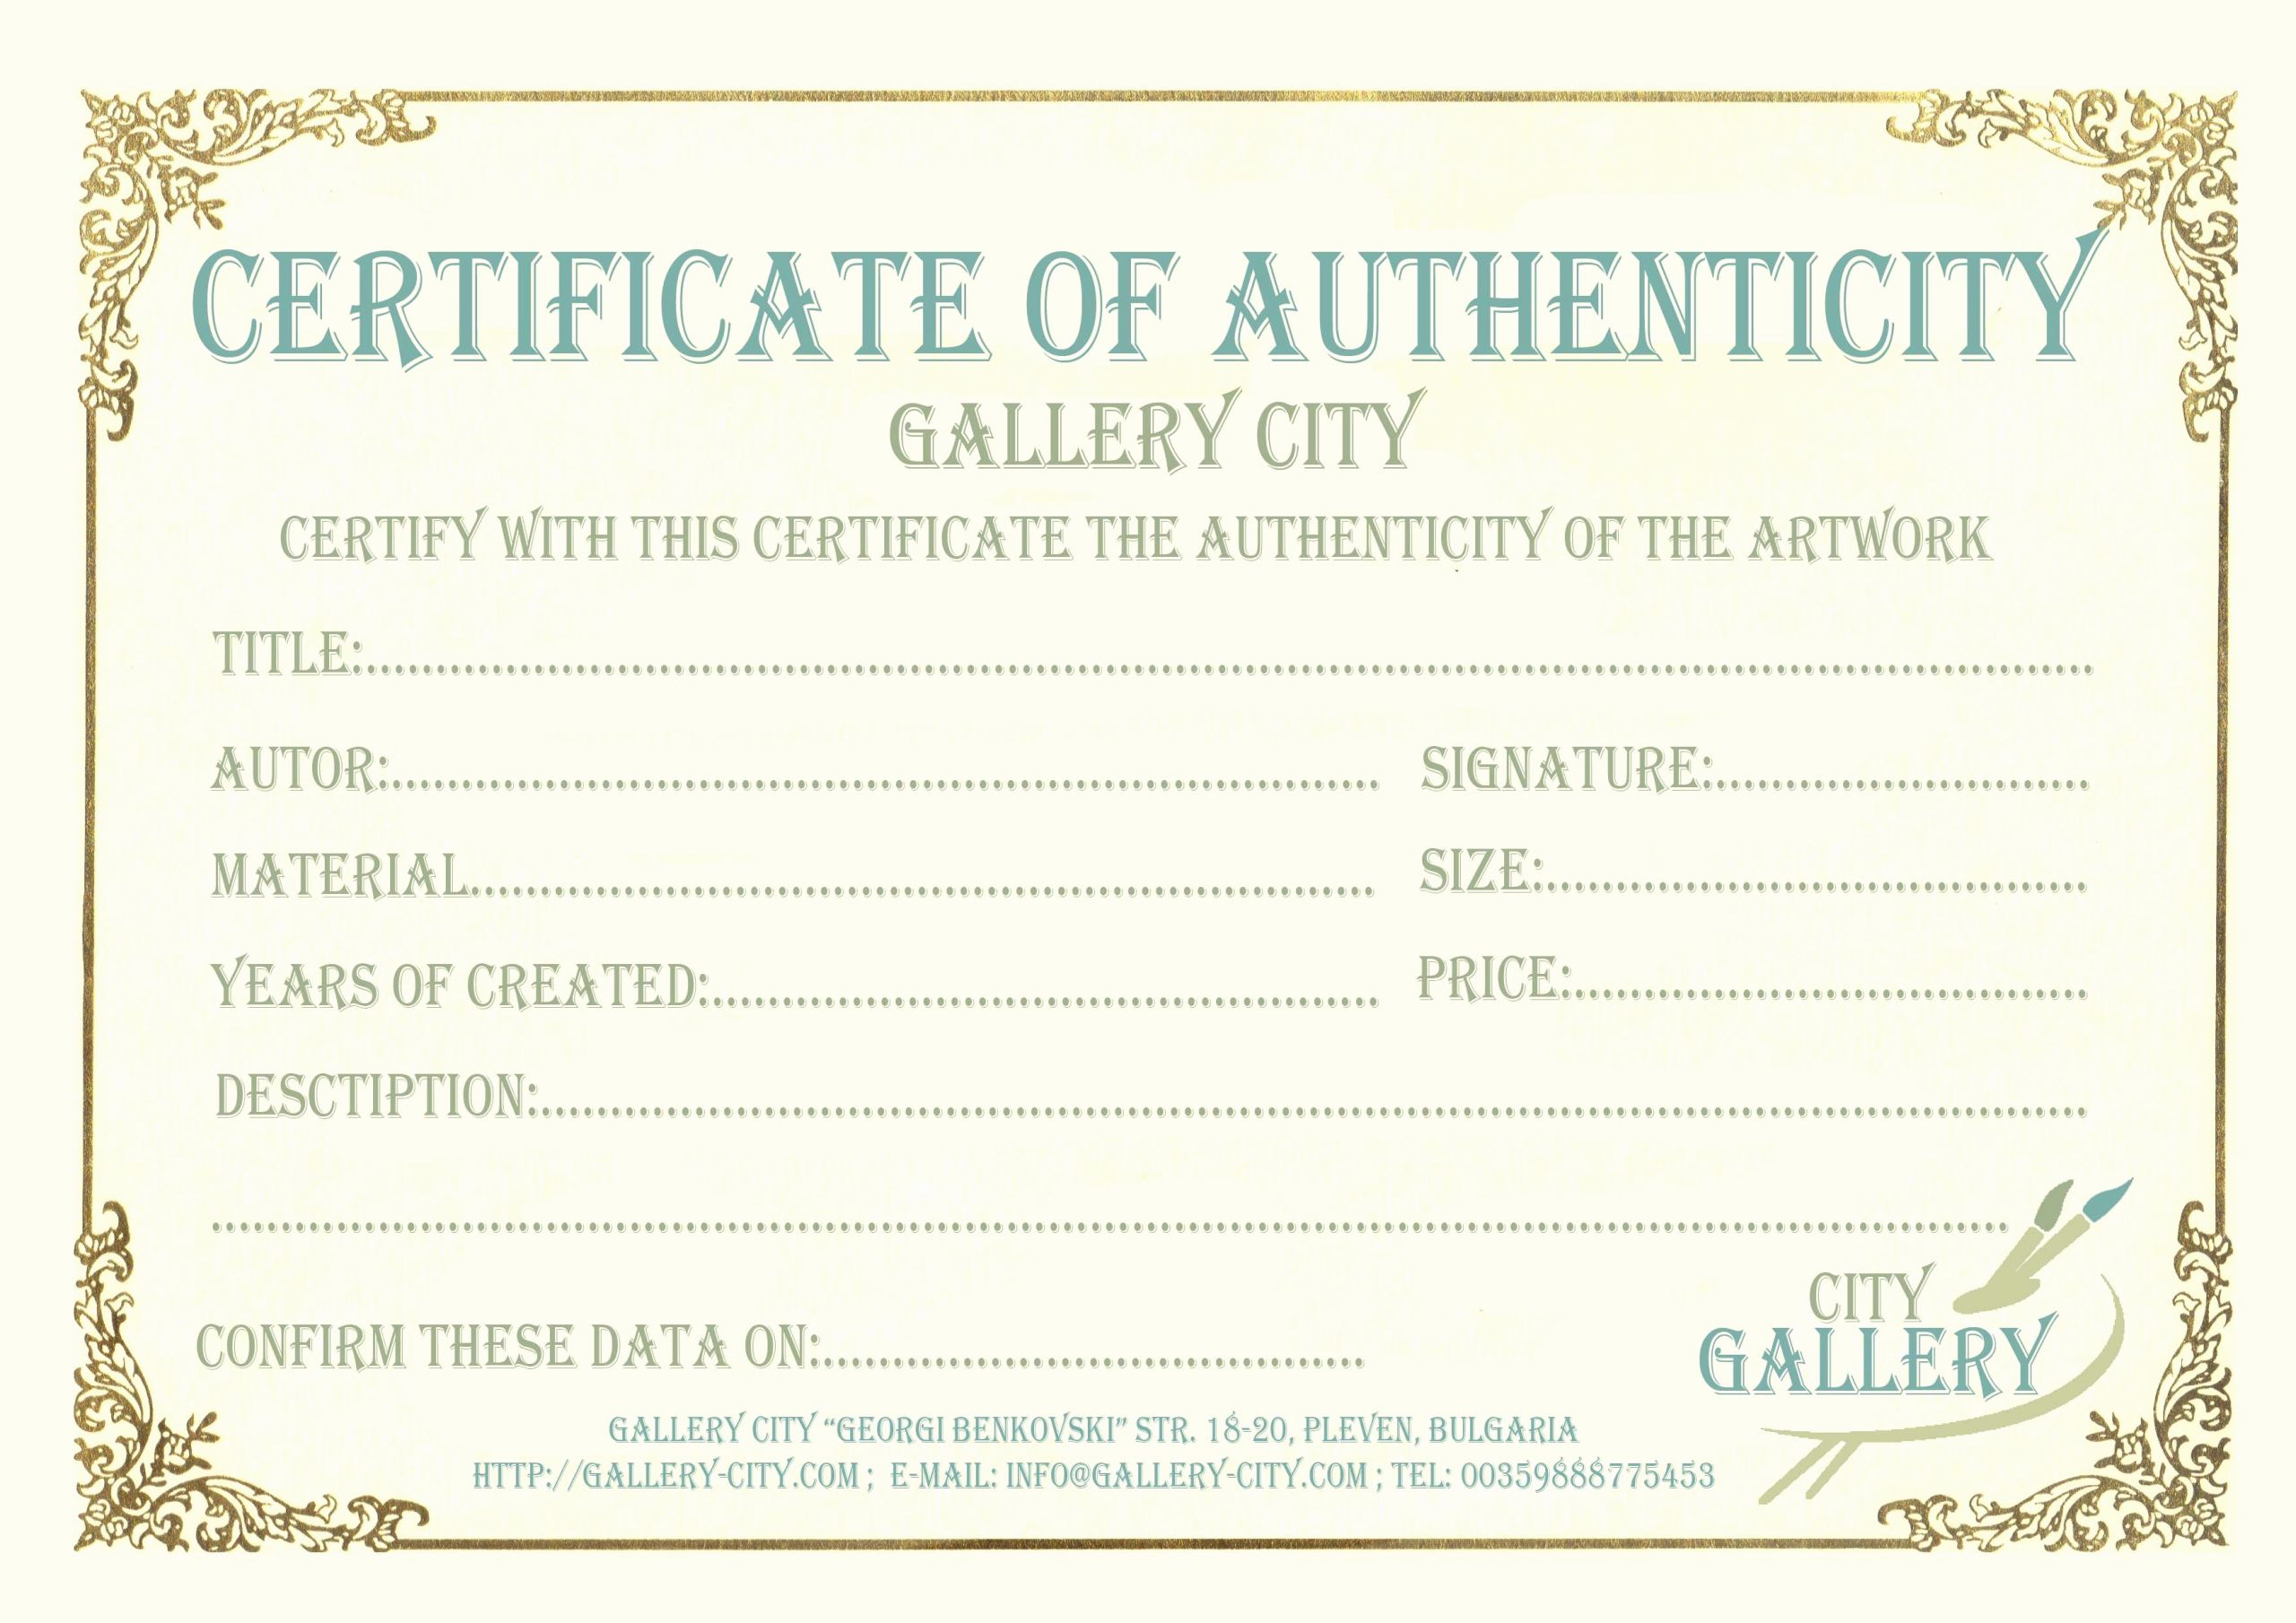 Life Saving Award Certificate Template Inspirational Certificate Authenticity Template Art Authenticity